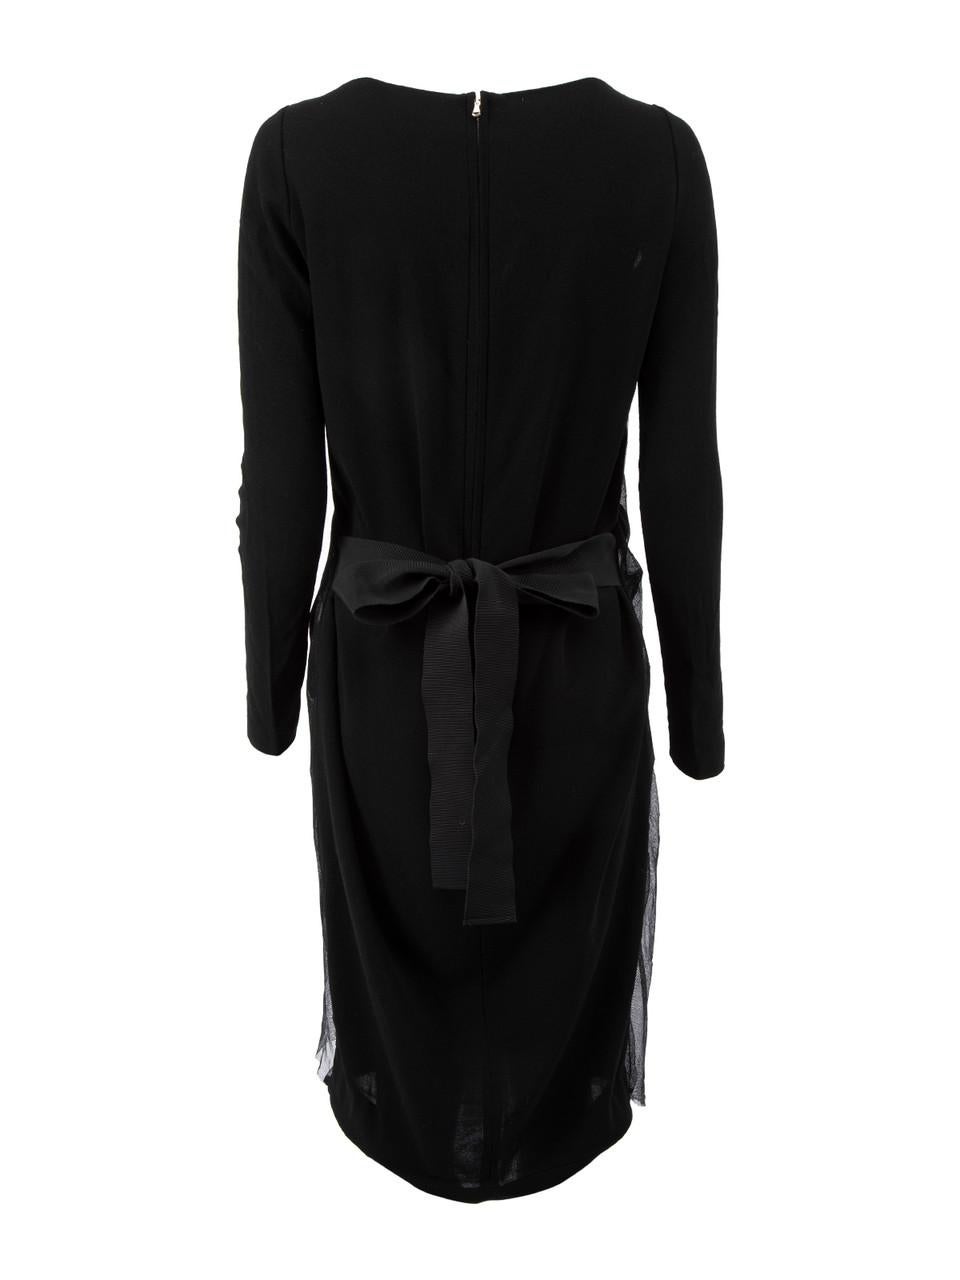 Noir Robe noire à manches longues en forme de paon, taille L en vente